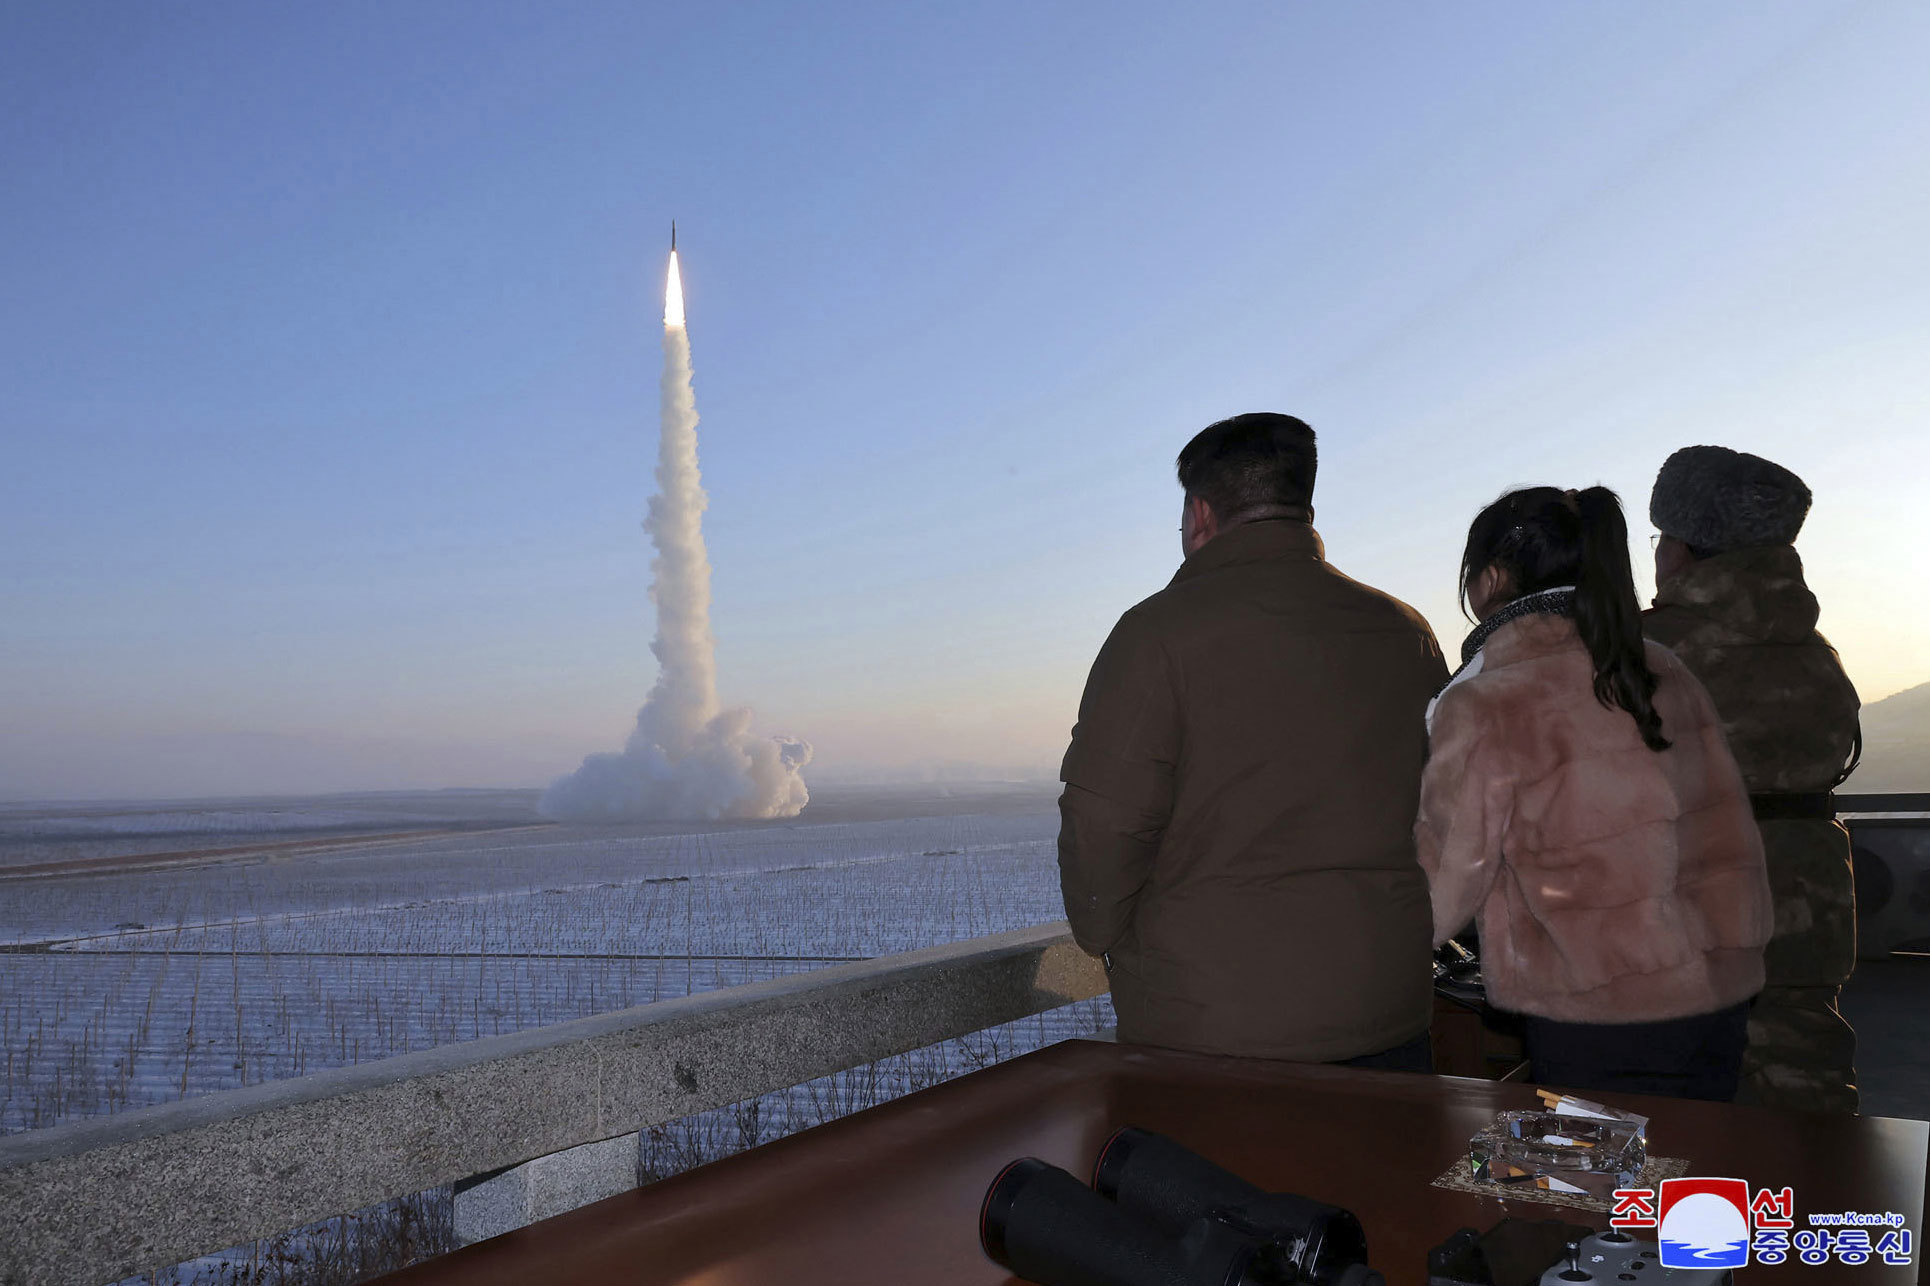 El líder norcoreano, Kim Jong Un, observa el lanzamiento de un misil.